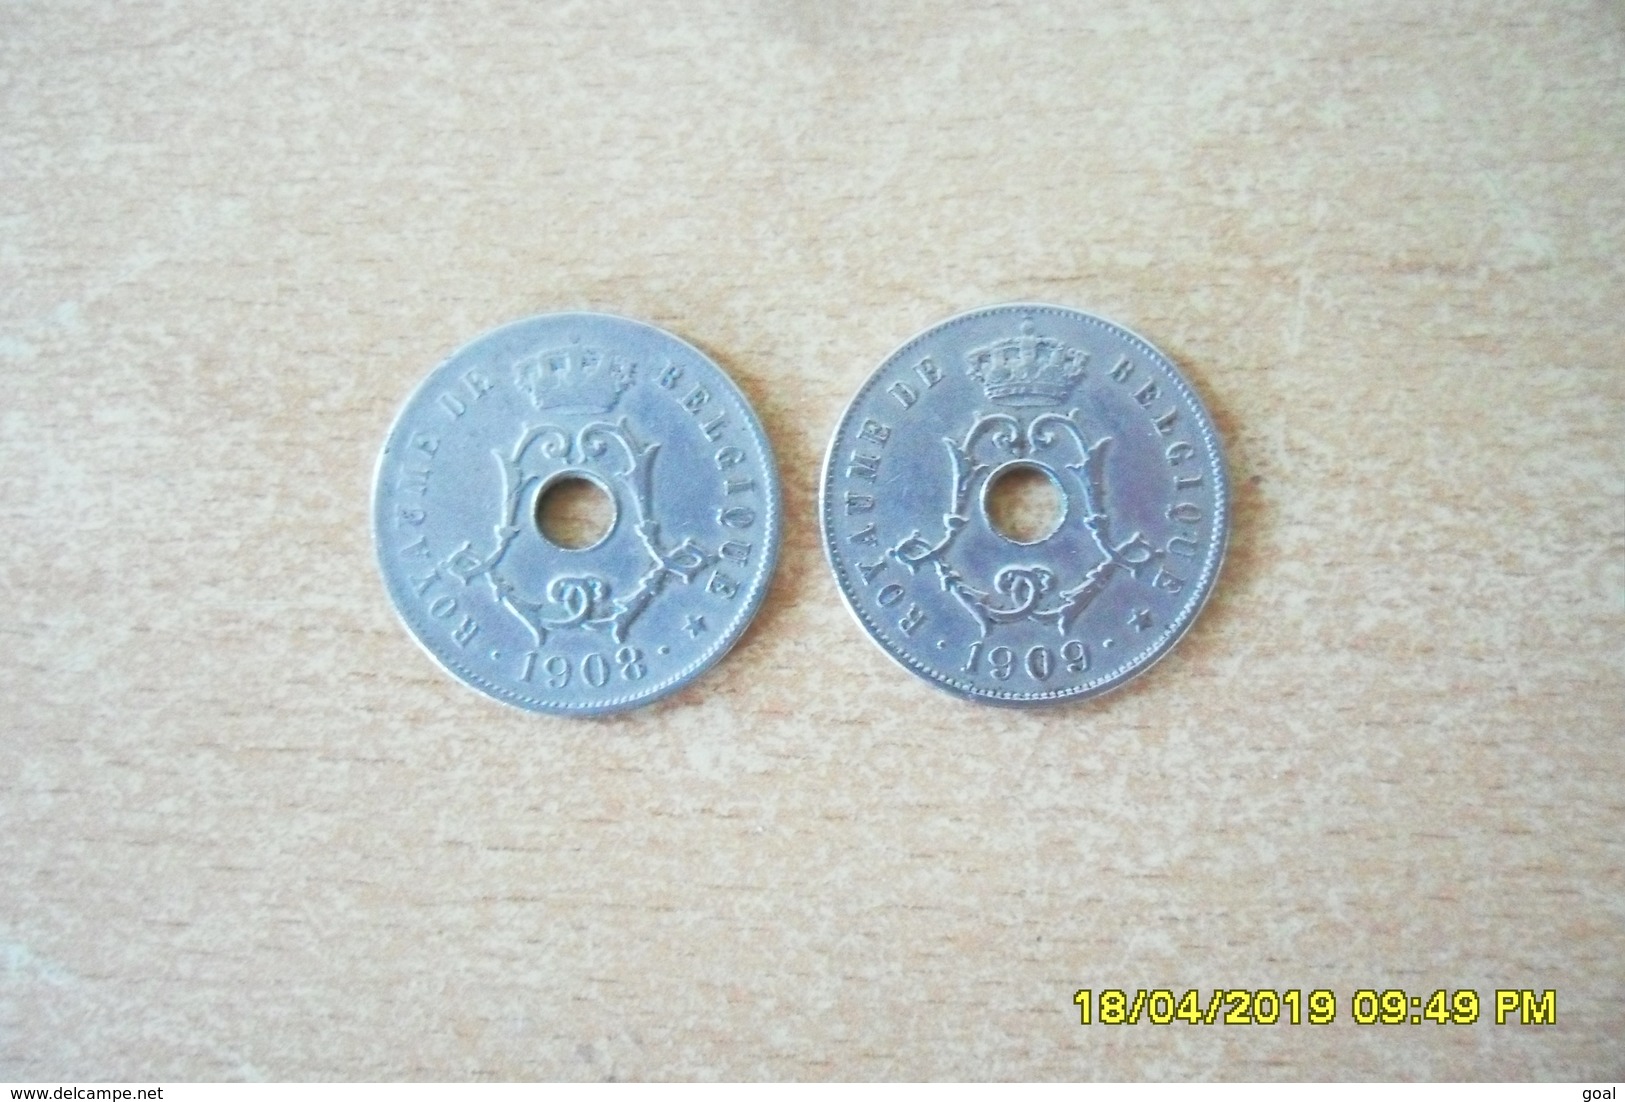 2 Monnaies De 25 Centimes De Belgique 1908 Et 1909 En TTB+(Monnaies Plus Belle Que Photos) - 25 Cents